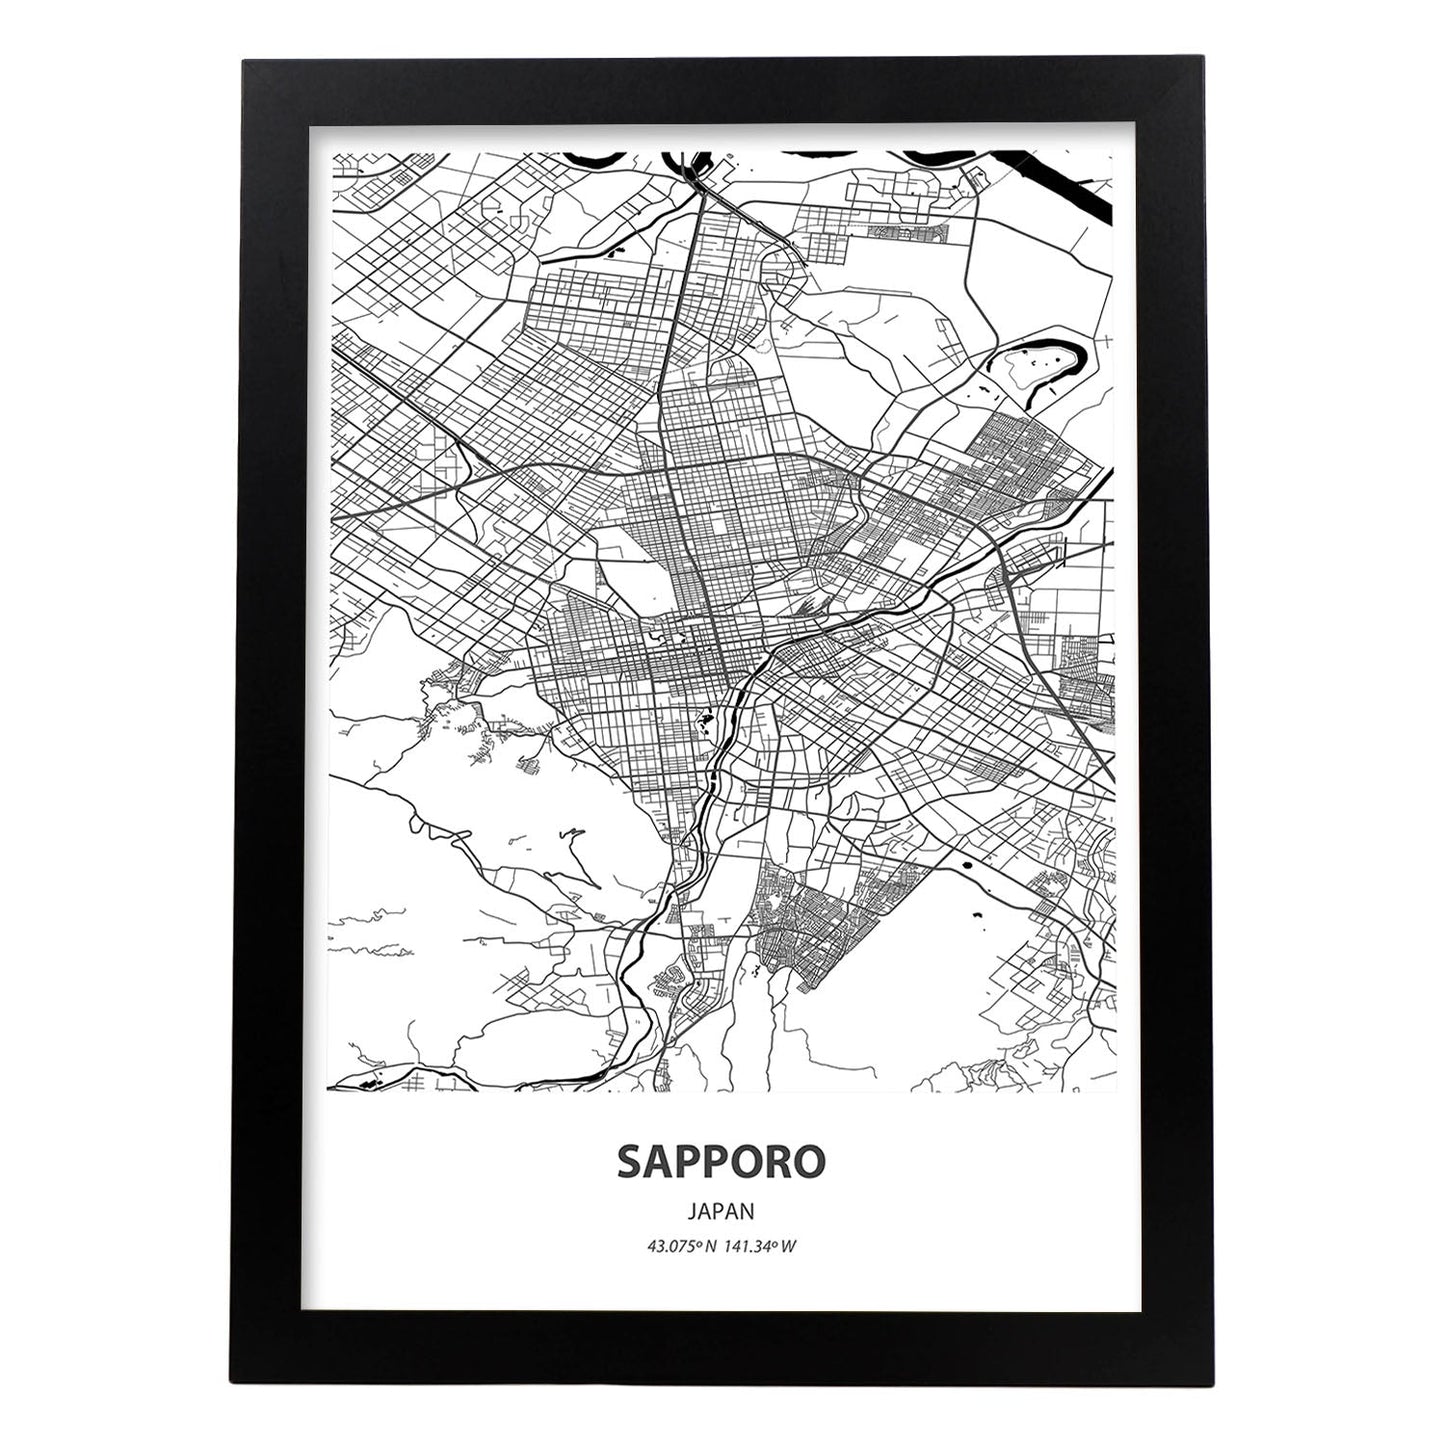 Poster con mapa de Sapporo - Japon. Láminas de ciudades de Asia con mares y ríos en color negro.-Artwork-Nacnic-A3-Marco Negro-Nacnic Estudio SL